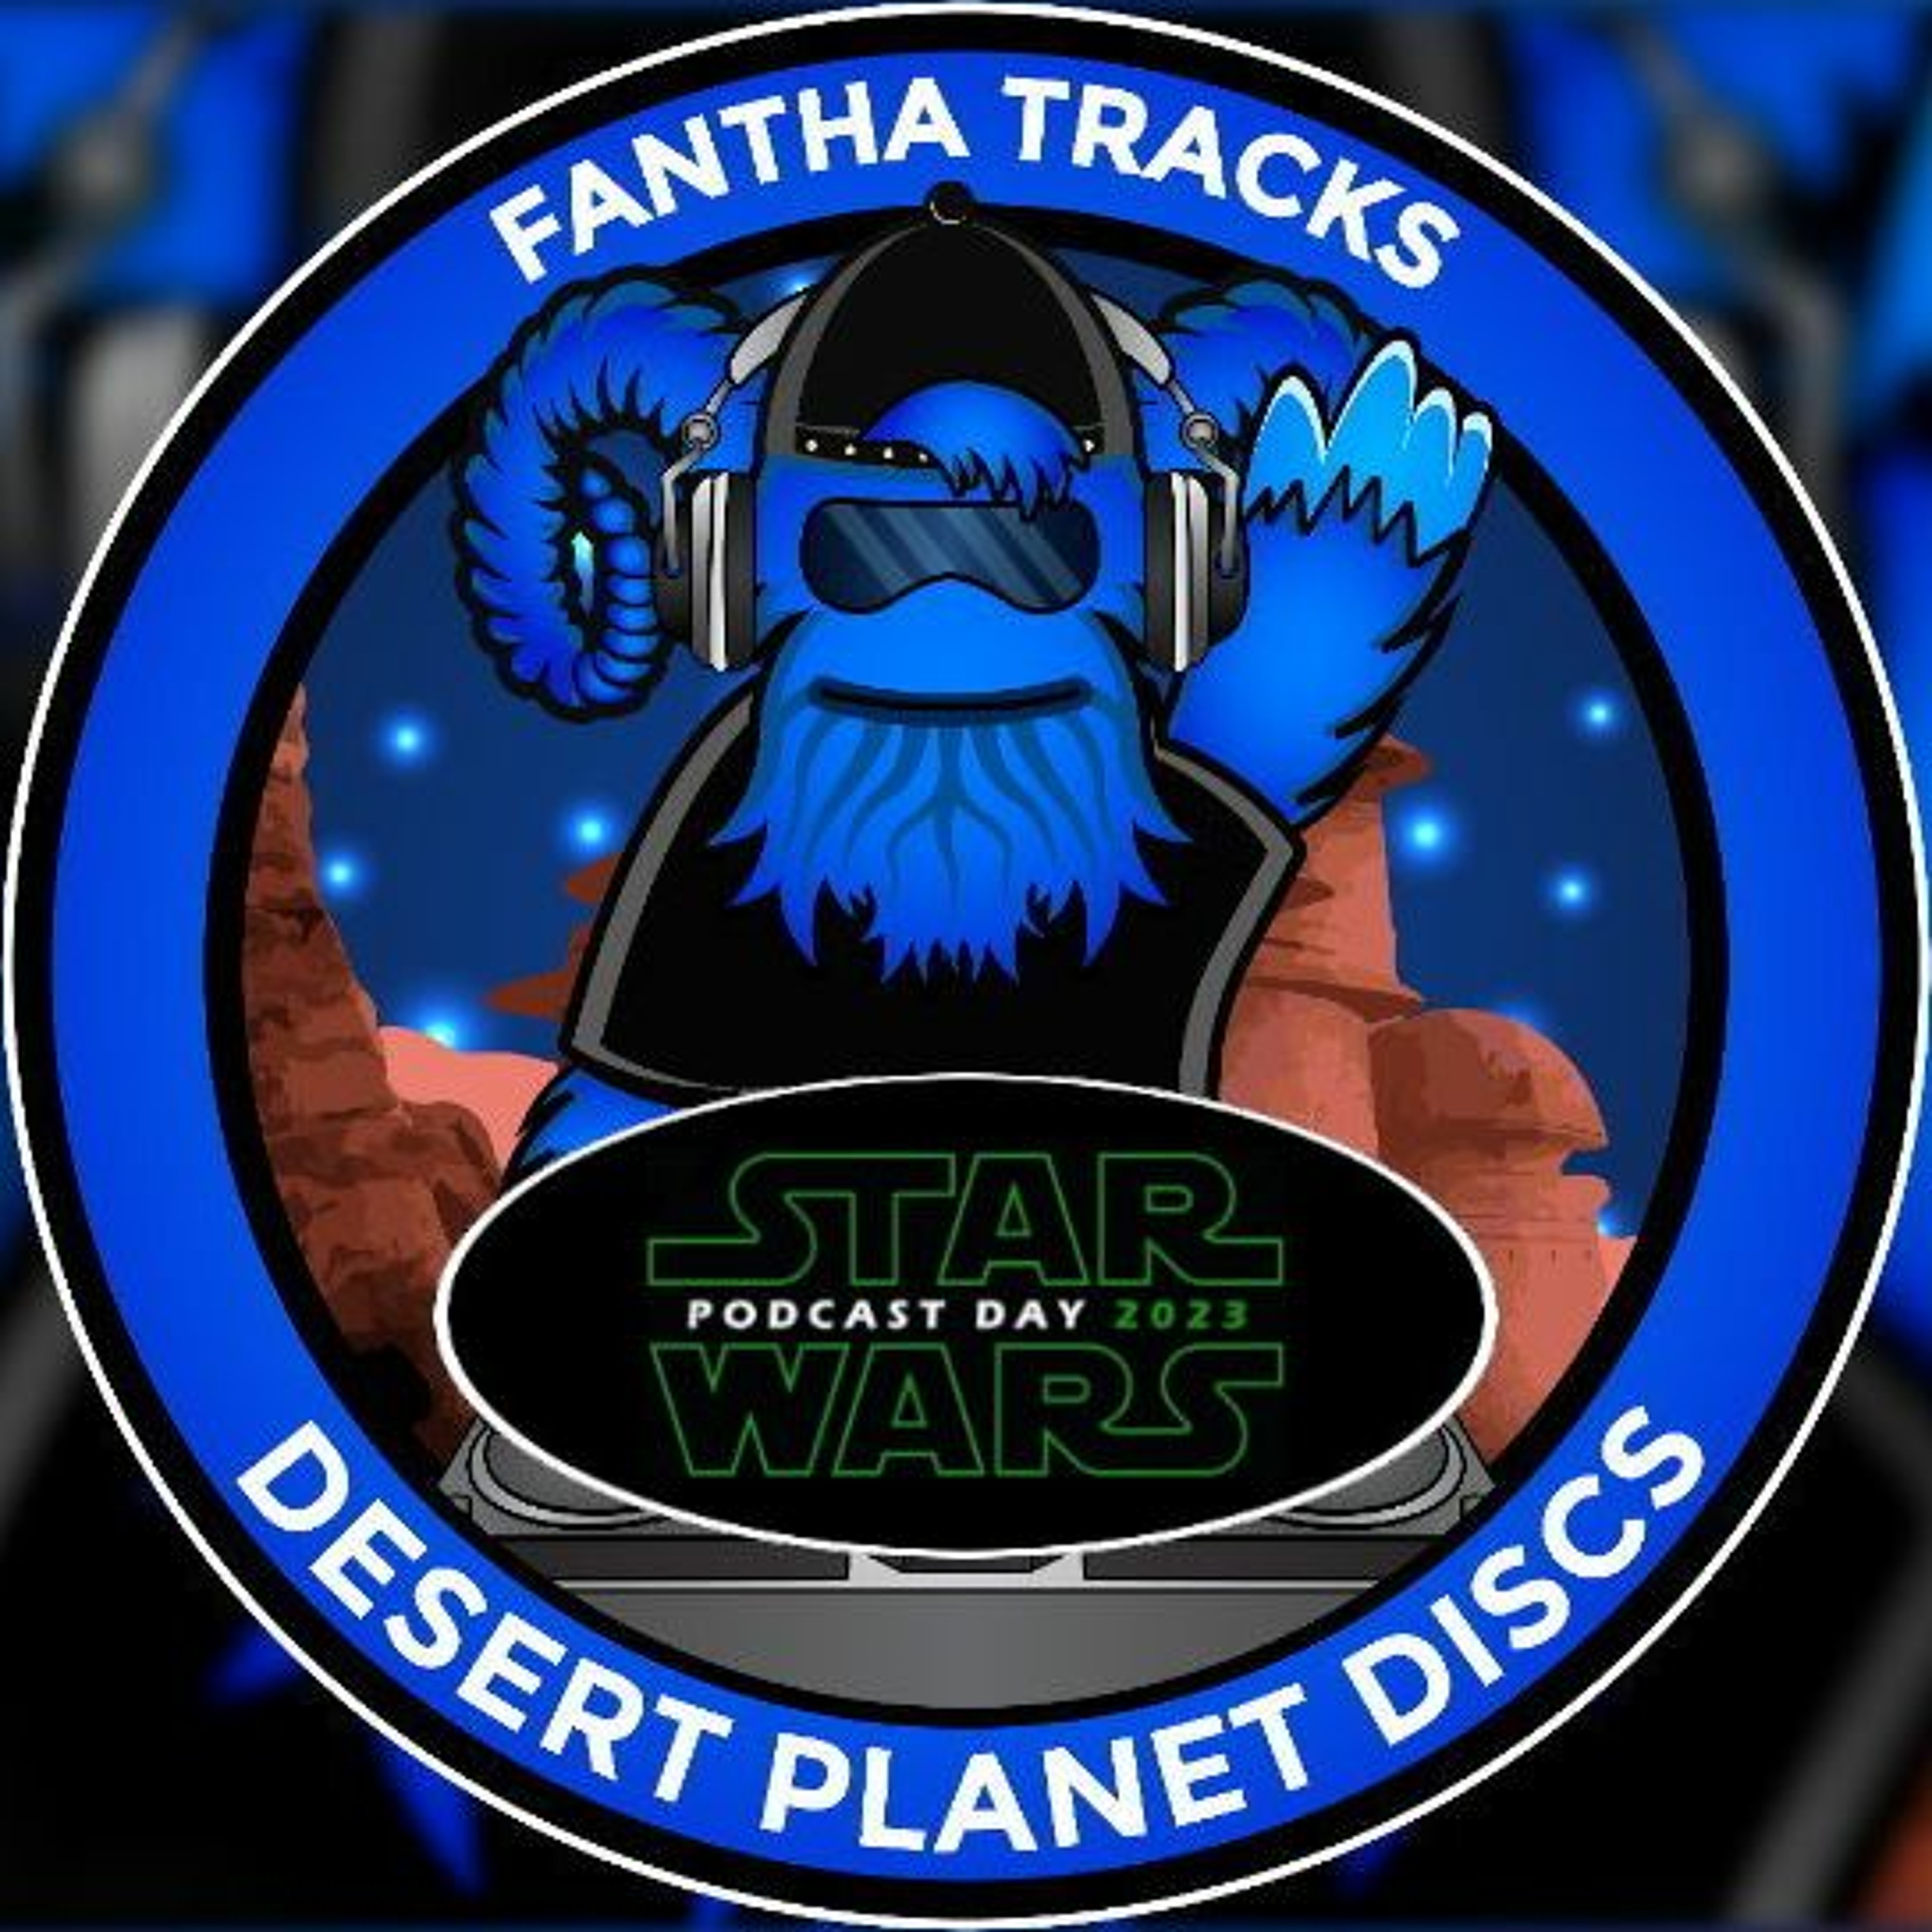 Desert Planet Discs Bonus Track: Star Wars Podcast Day 2023